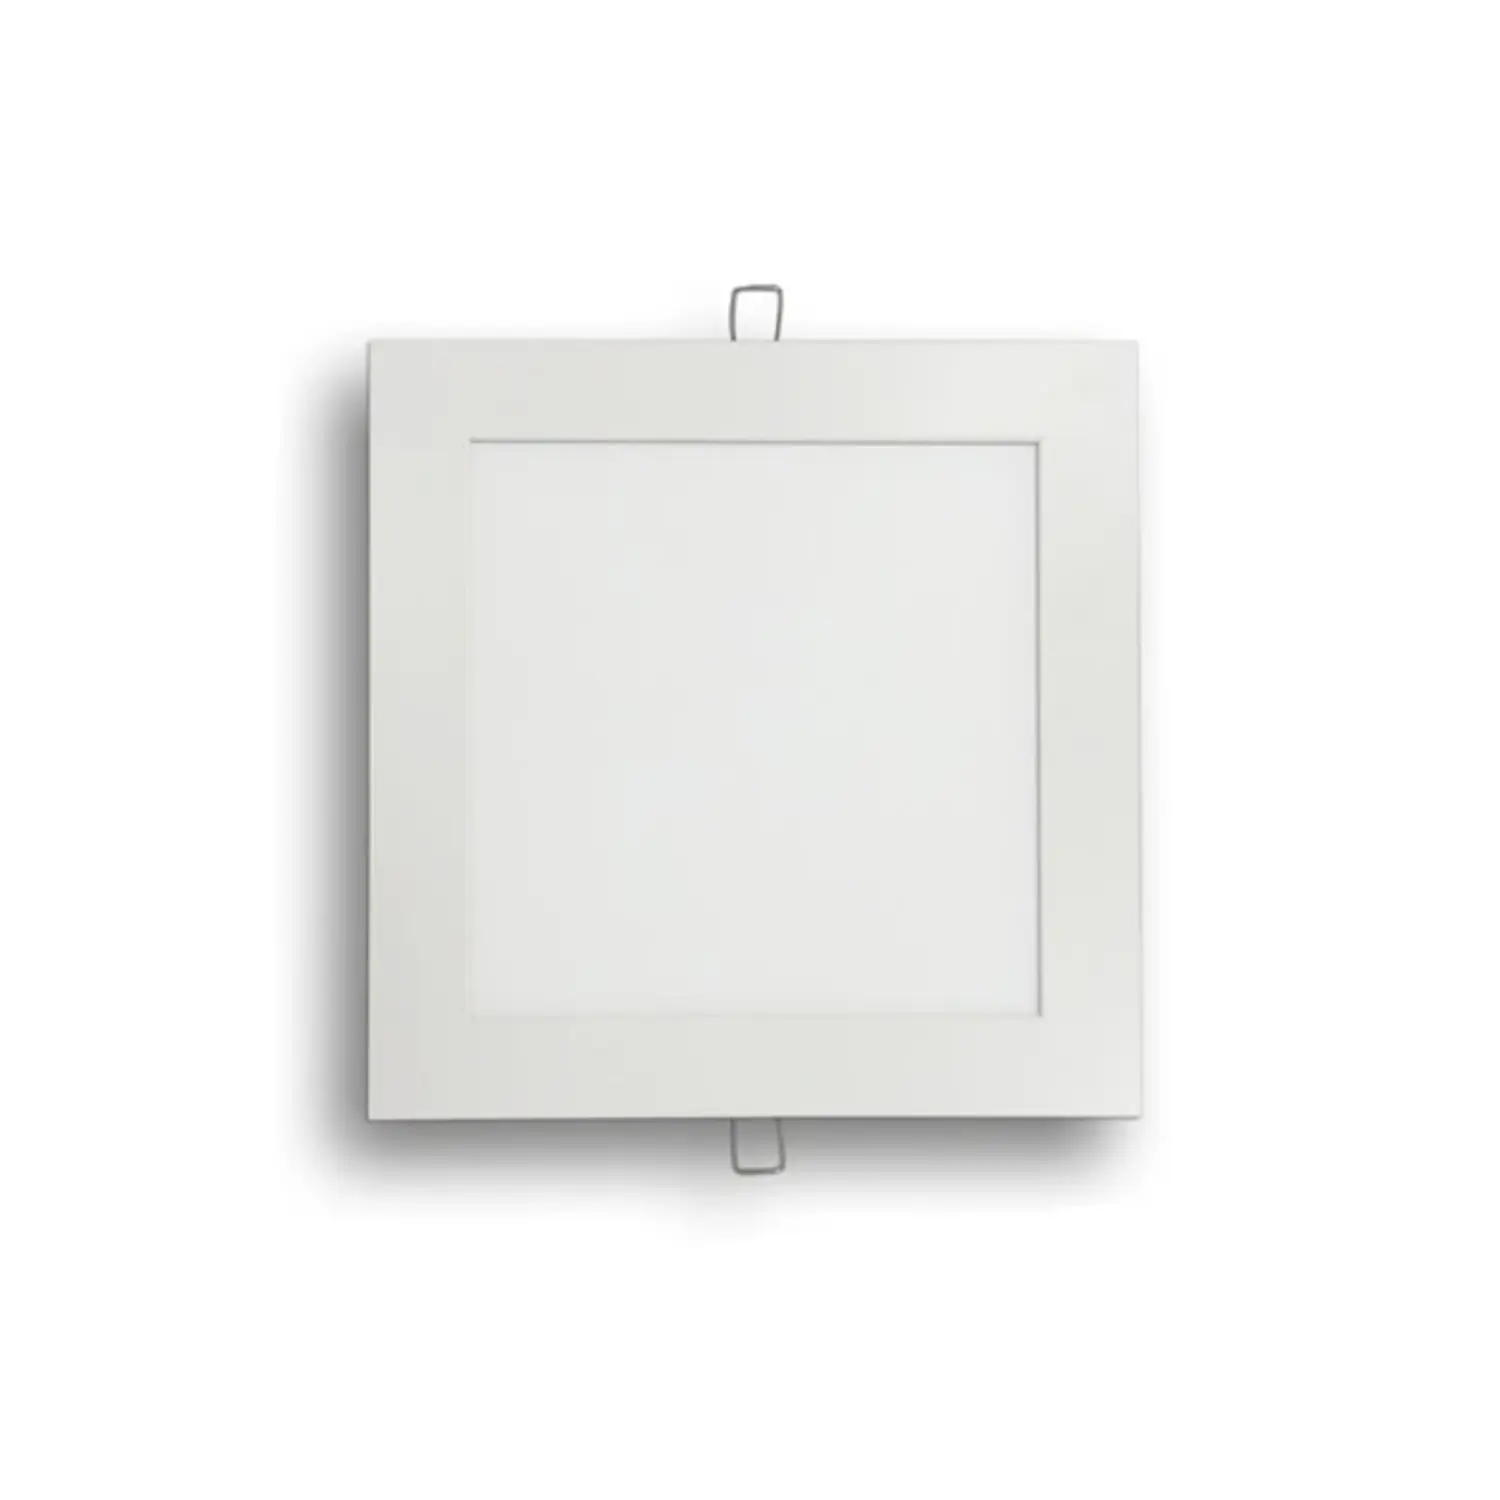 immagine del prodotto pannello led slim faretto incasso 6 watt bianco freddo quadrato